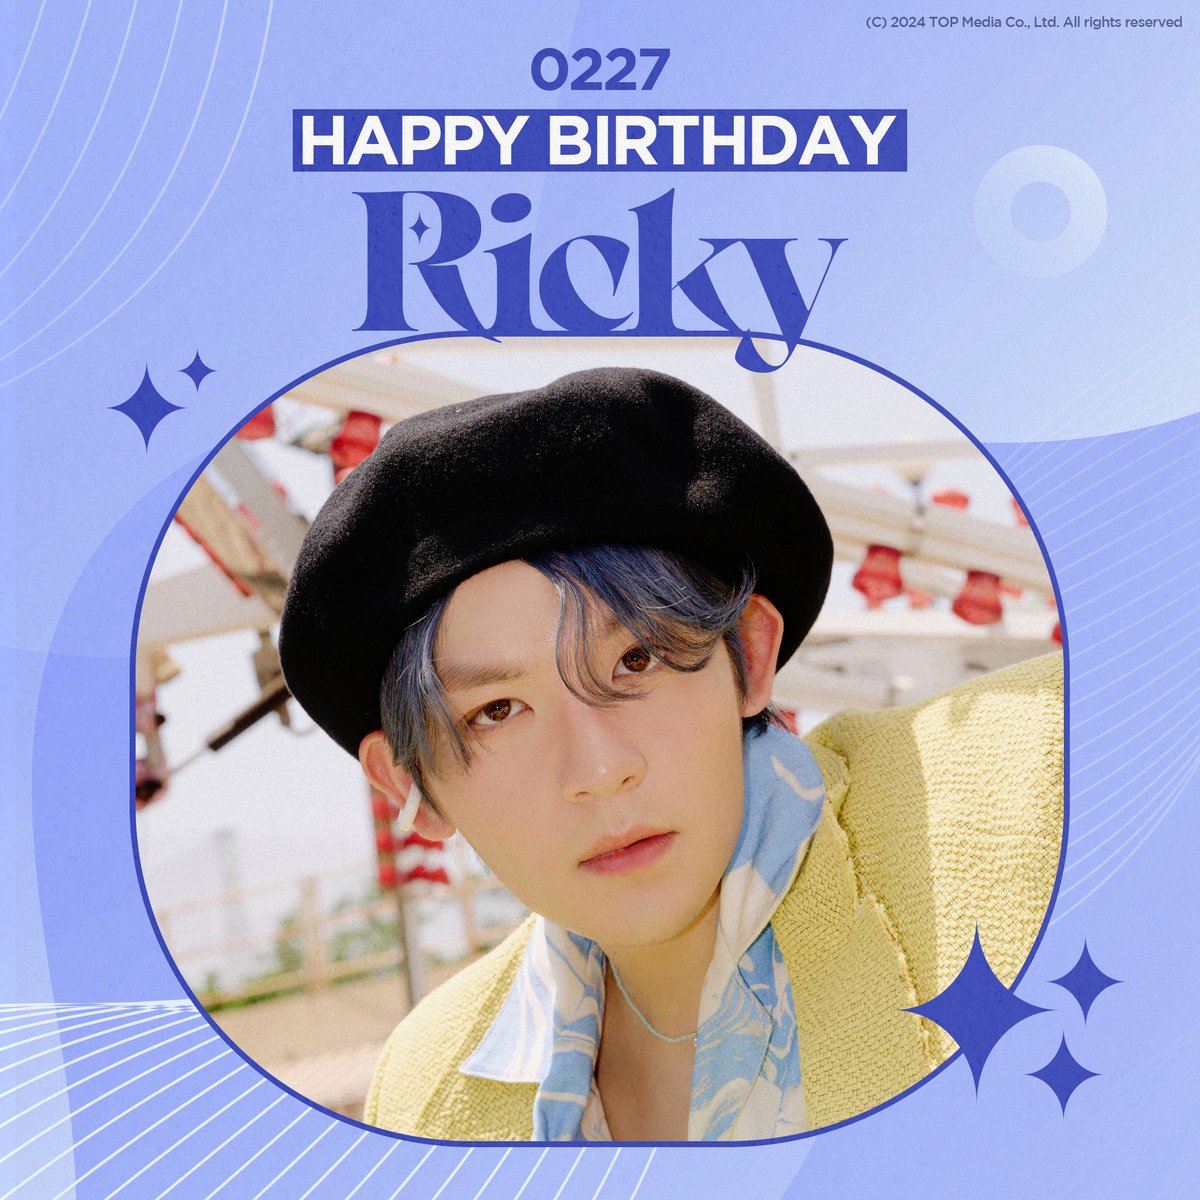 [#틴탑] #리키 의 생일을 축하합니다! HAPPY BIRTHDAY TO #RICKY #HAPPYRICKYDAY #틴탑_리키의_29번째_행복 #HappyRickyHappyDay29